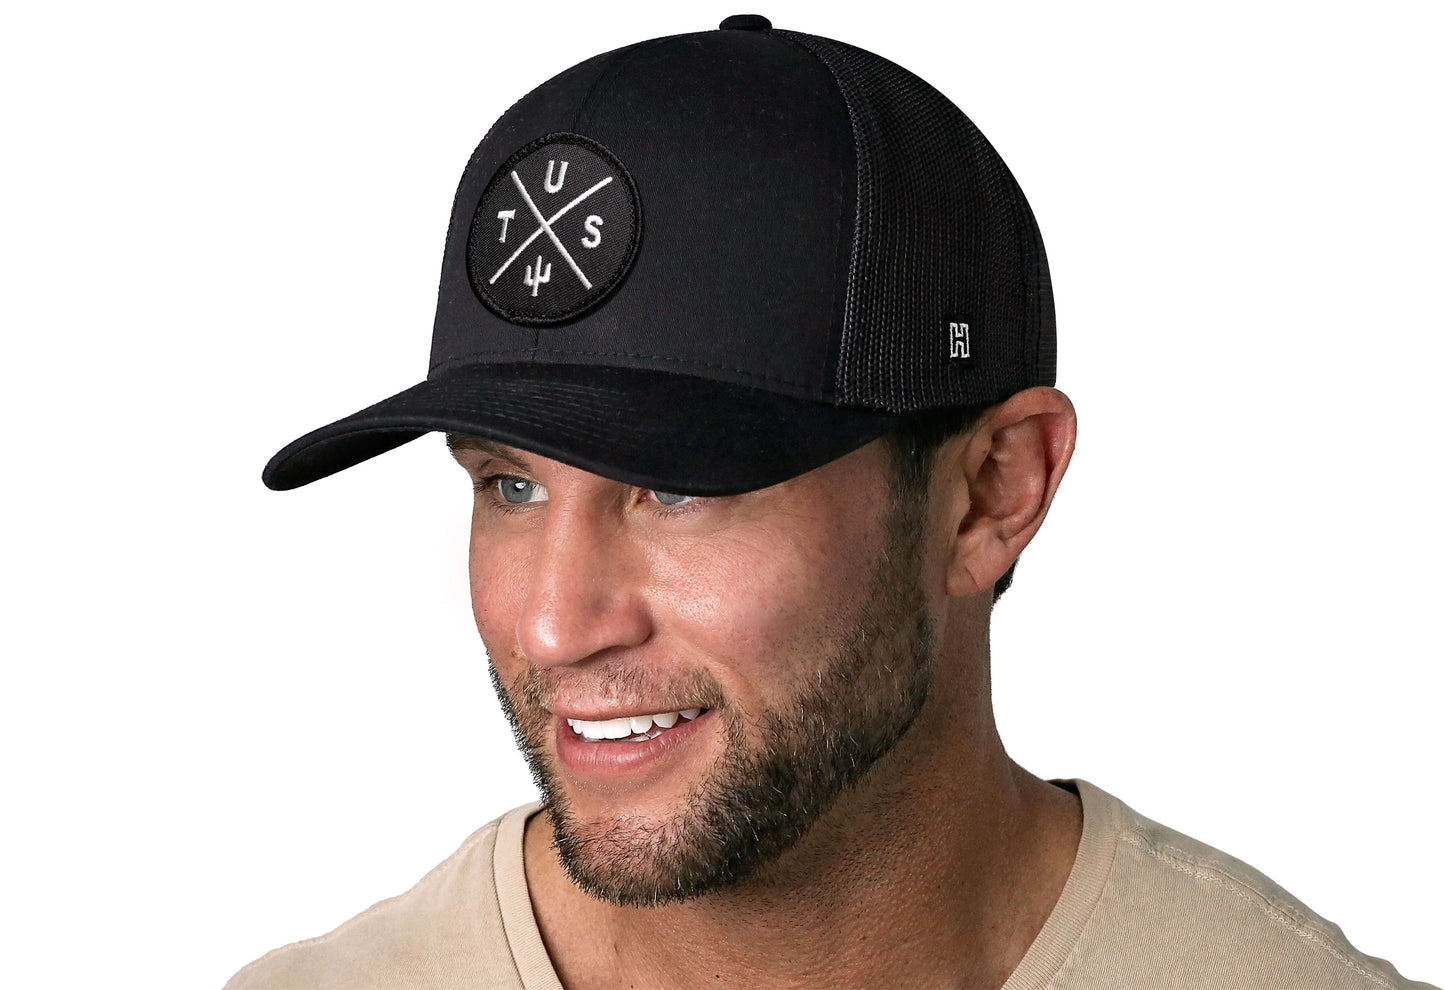 Tucson Trucker Hat  |  Black TUS Snapback